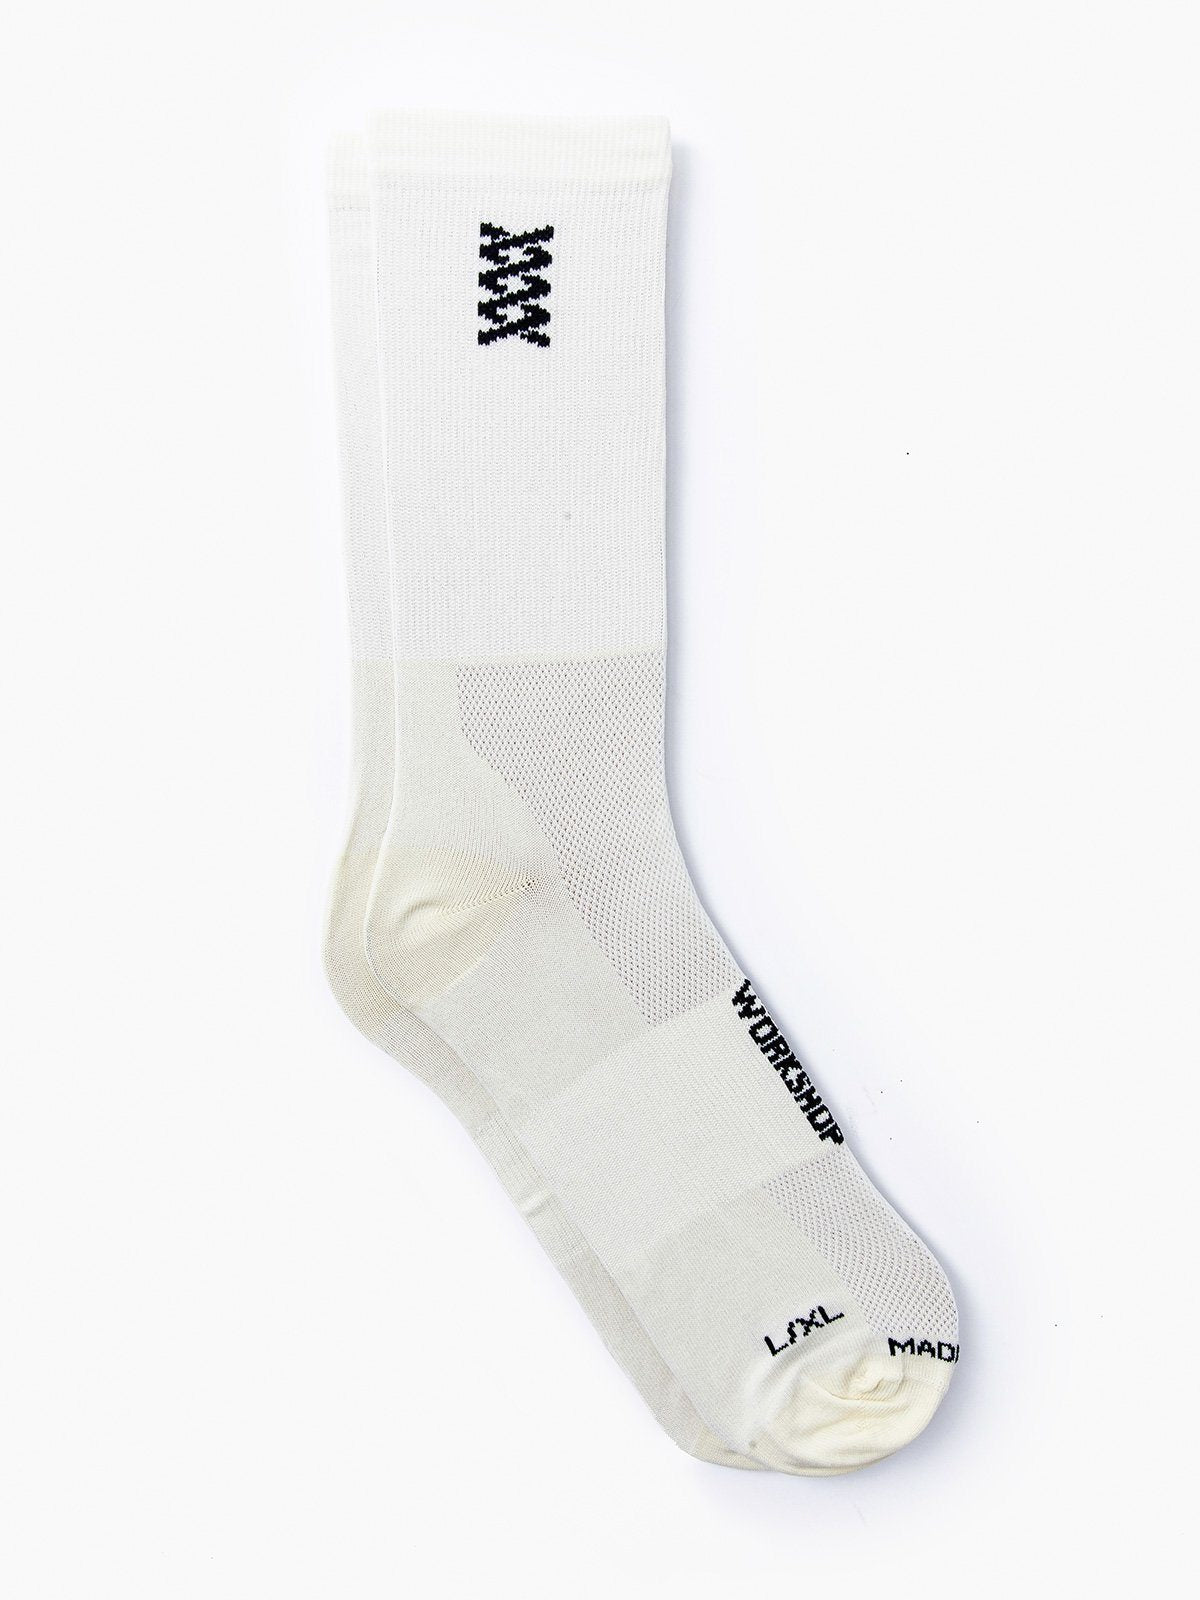 Mission Pro Socks by Mission Workshop - Säänkestävät laukut ja tekniset vaatteet - San Francisco & Los Angeles - Kestävät - ikuinen takuu